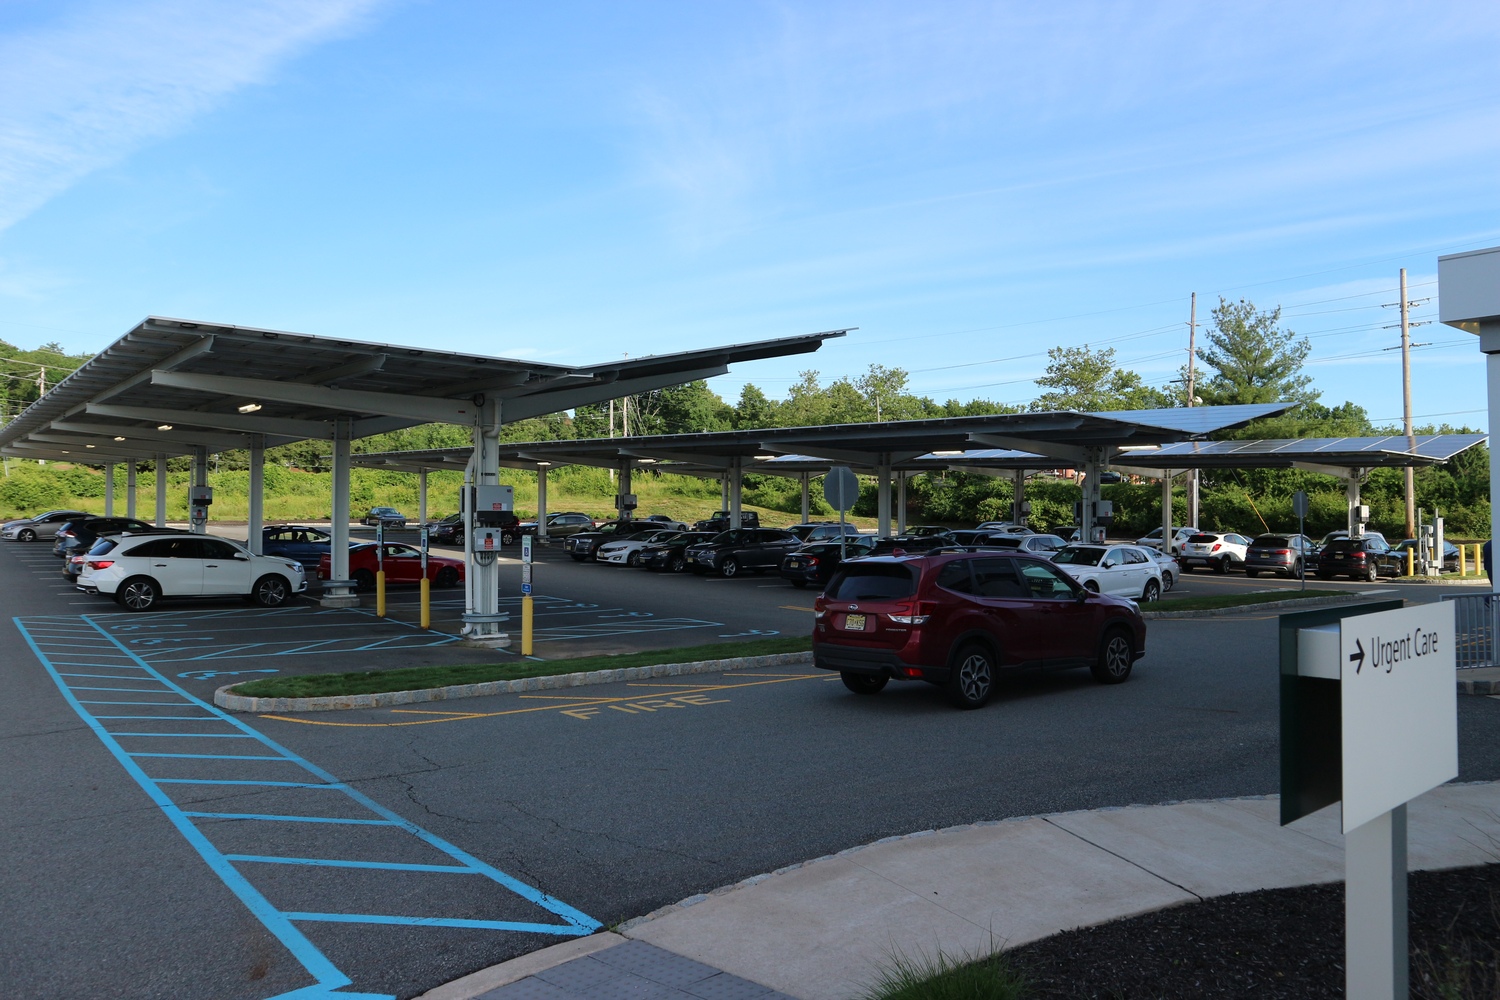 A Florham Park városában lévő egészségügyi központ parkolójában három éve telepítették a napelemes árnyékolót a kocsik fölé